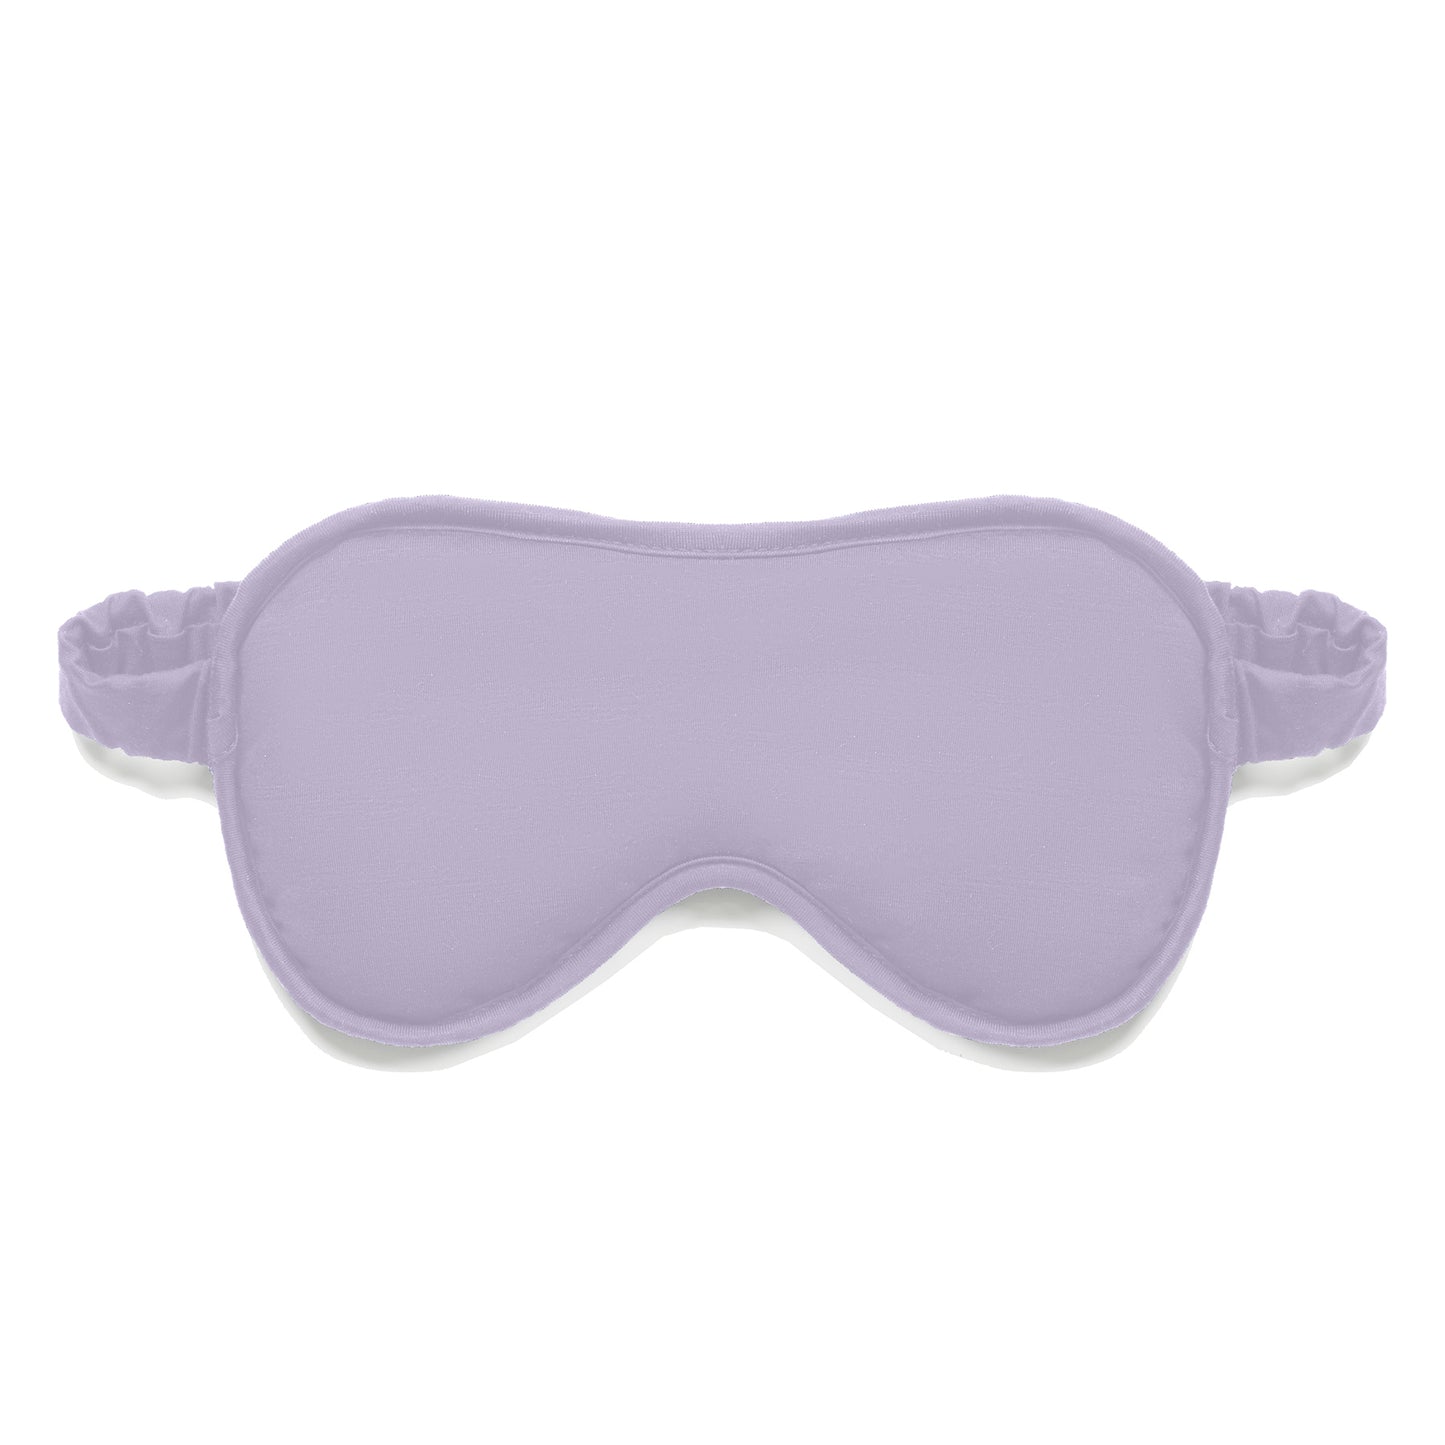 Cooling sleep mask || Lavender